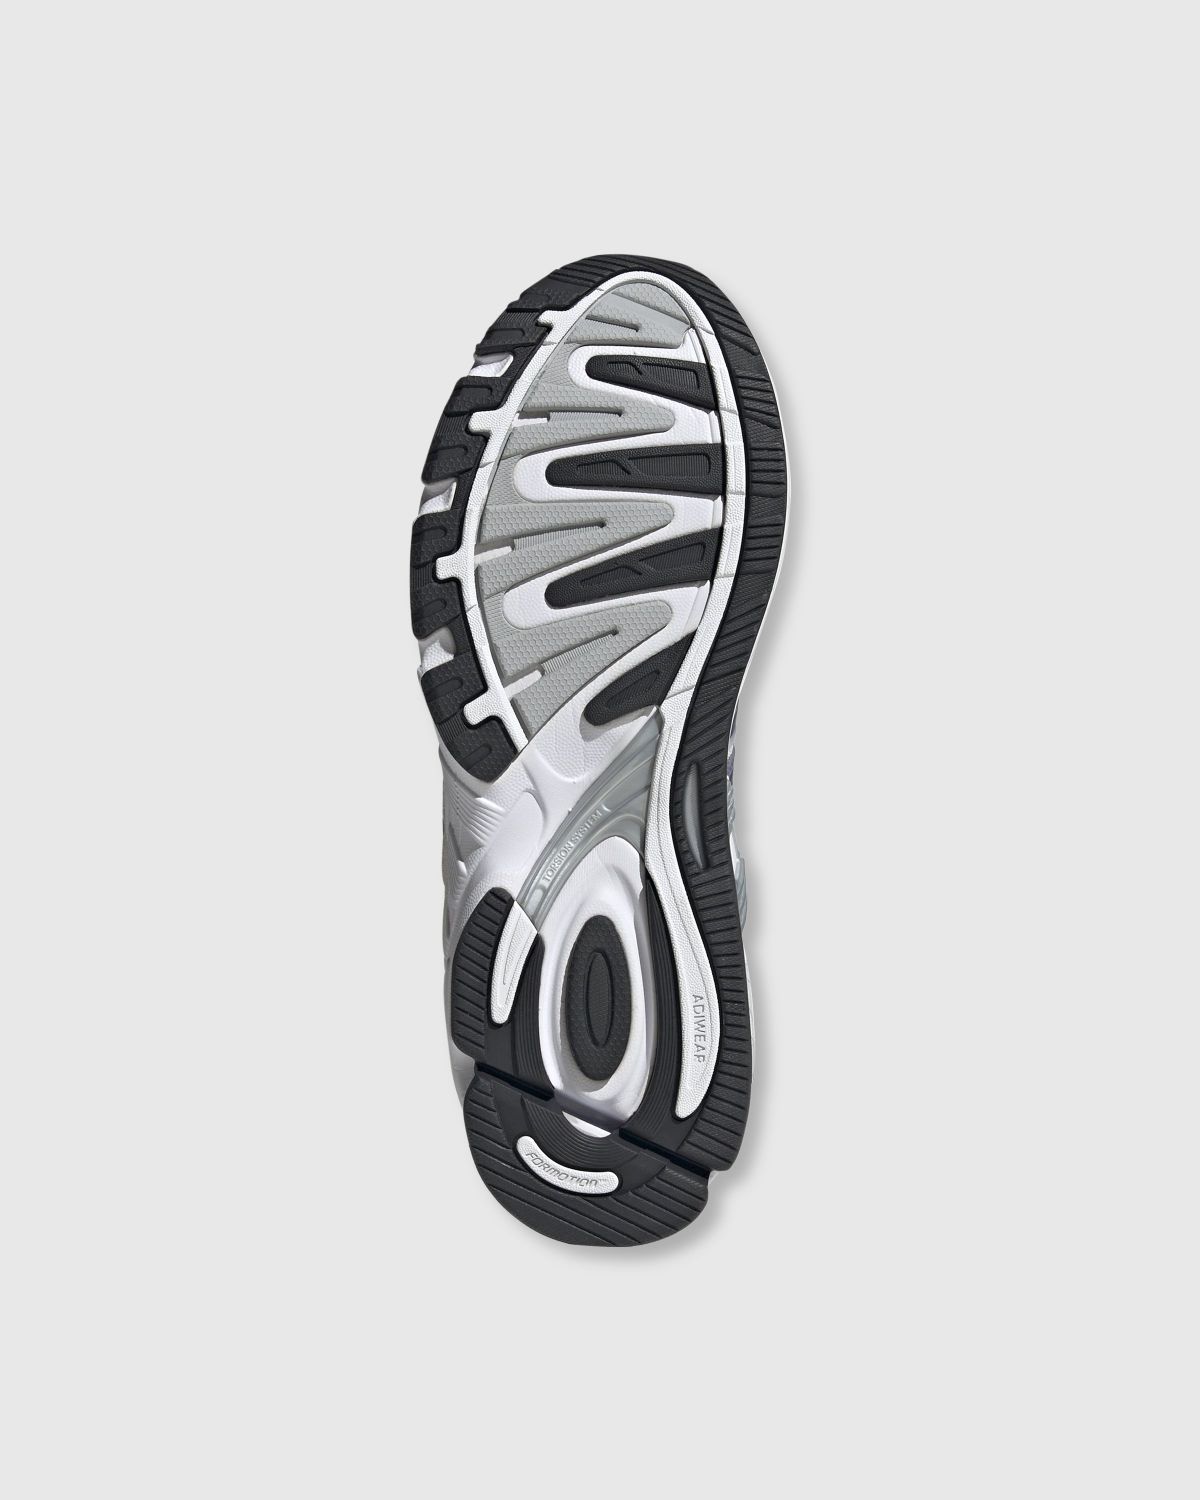 Adidas – Response CL White/Black  - Sneakers - White - Image 6